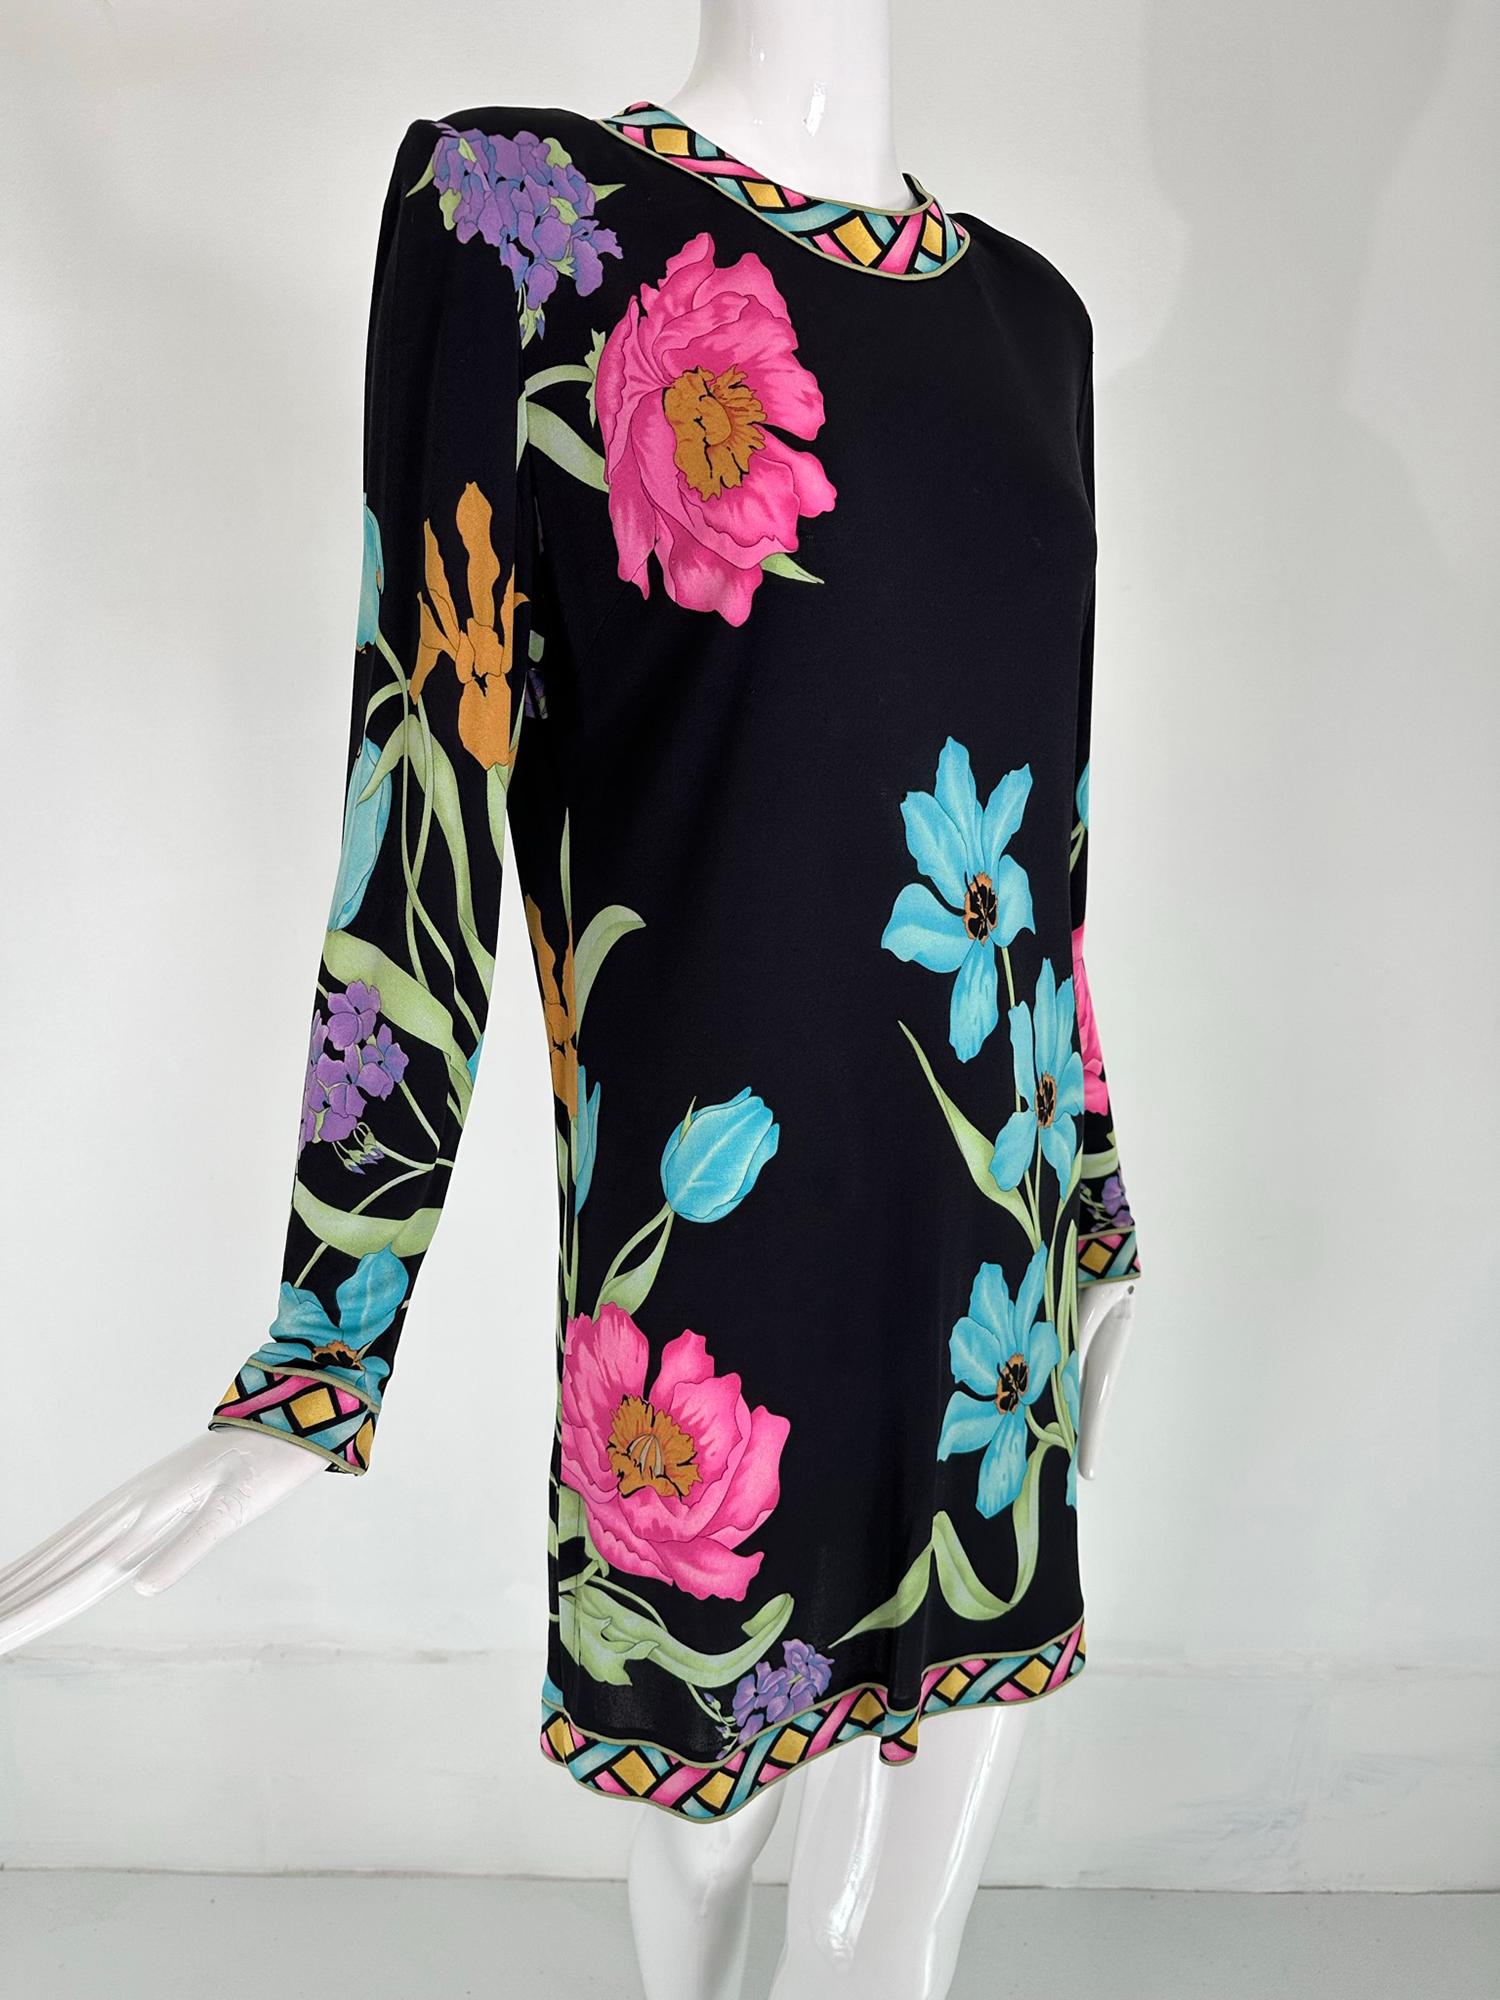 Averardo Bessi spektakuläre vibrierende Seide floral Tunika Kleid US 12. Dieses schöne Kleid aus den 1990er Jahren kann als Tunika oder als Minikleid getragen werden. Gebändertes Kleid mit Juwelenausschnitt und langen Ärmeln. Das Kleid hat seitliche